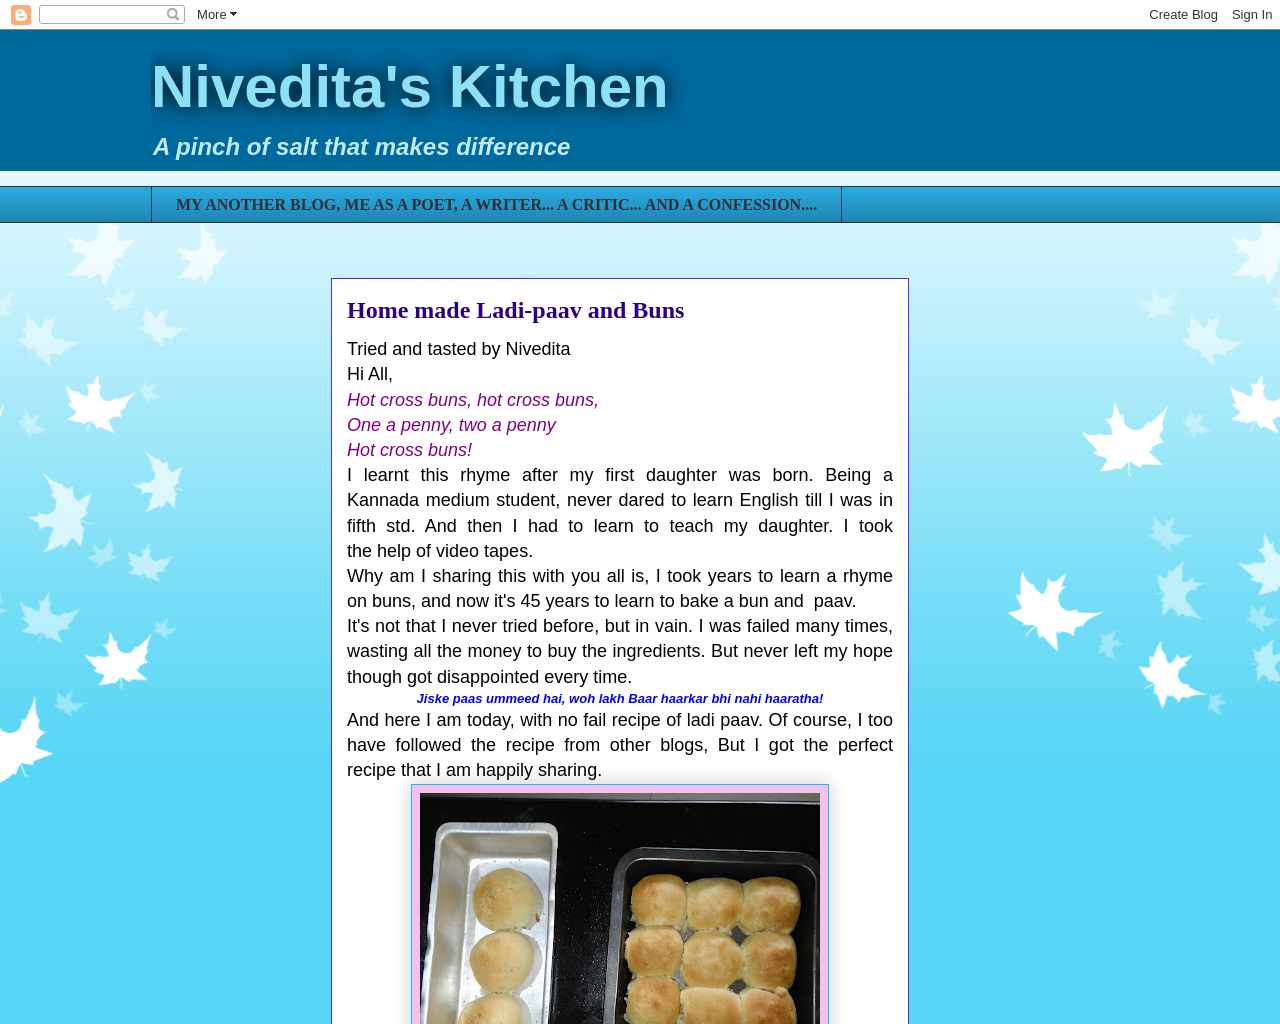 Nivedita's Kitchen